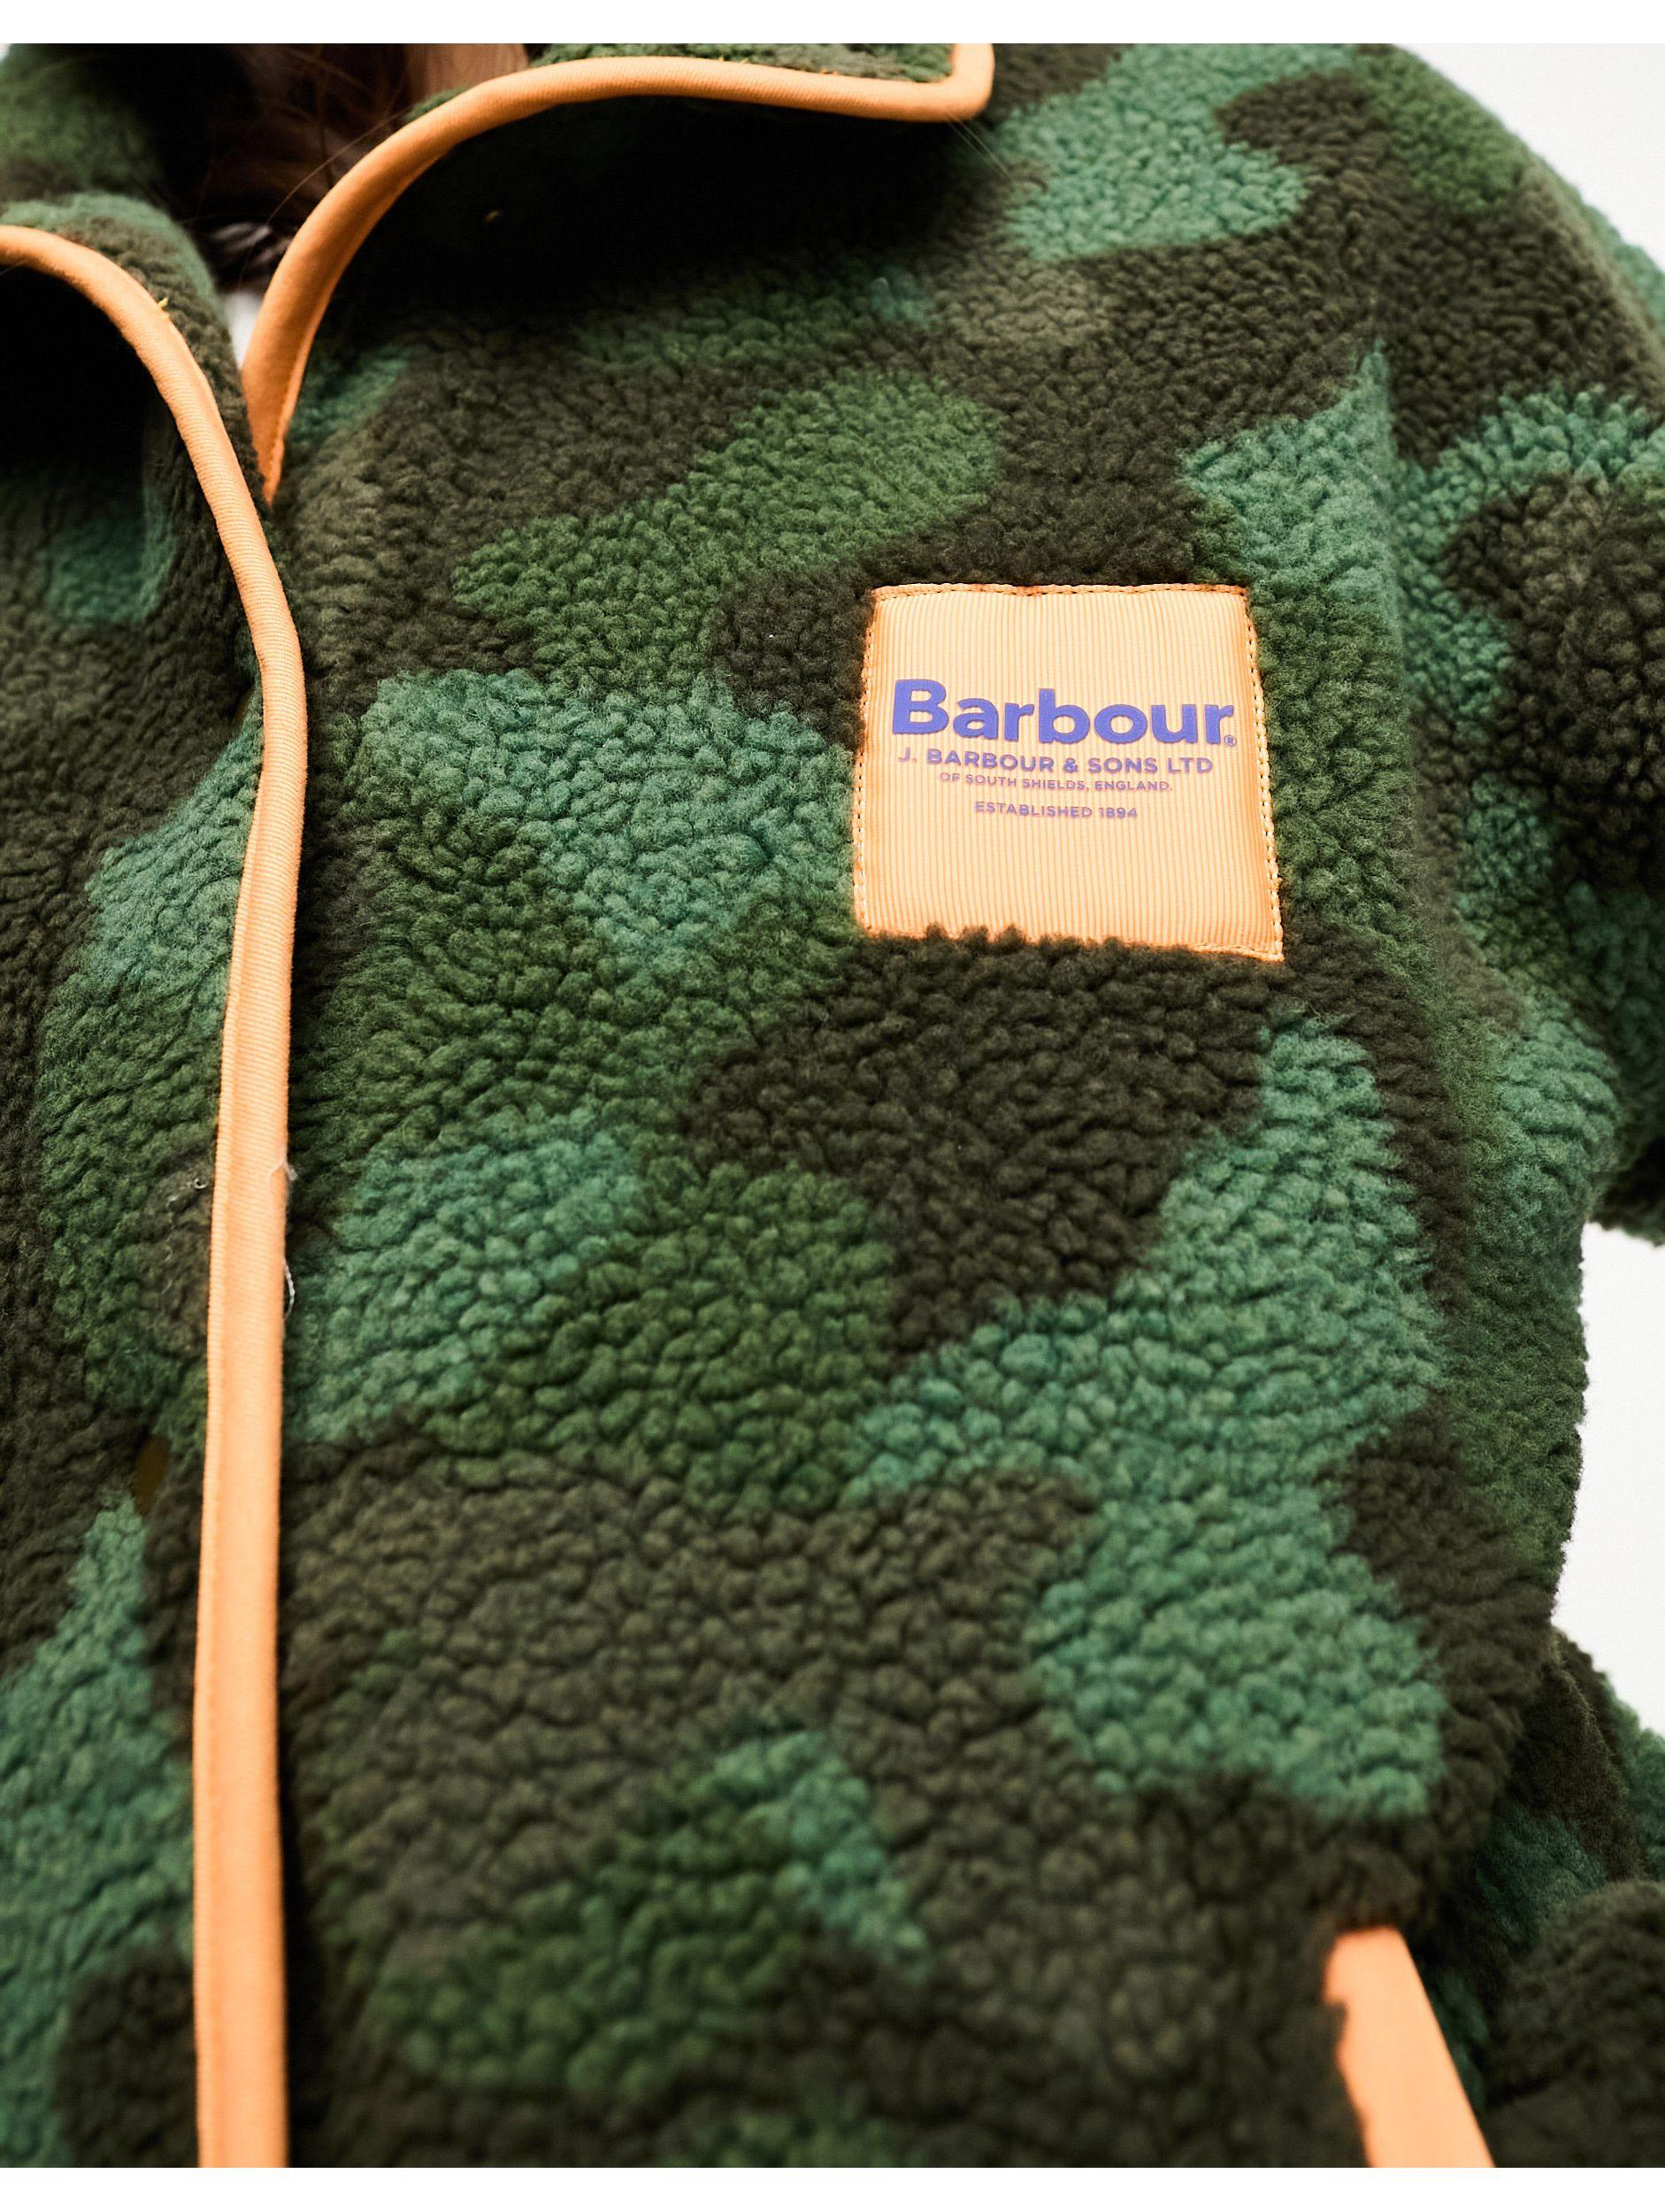 Barbour x ASOS exclusive reusable travel mug in green camo